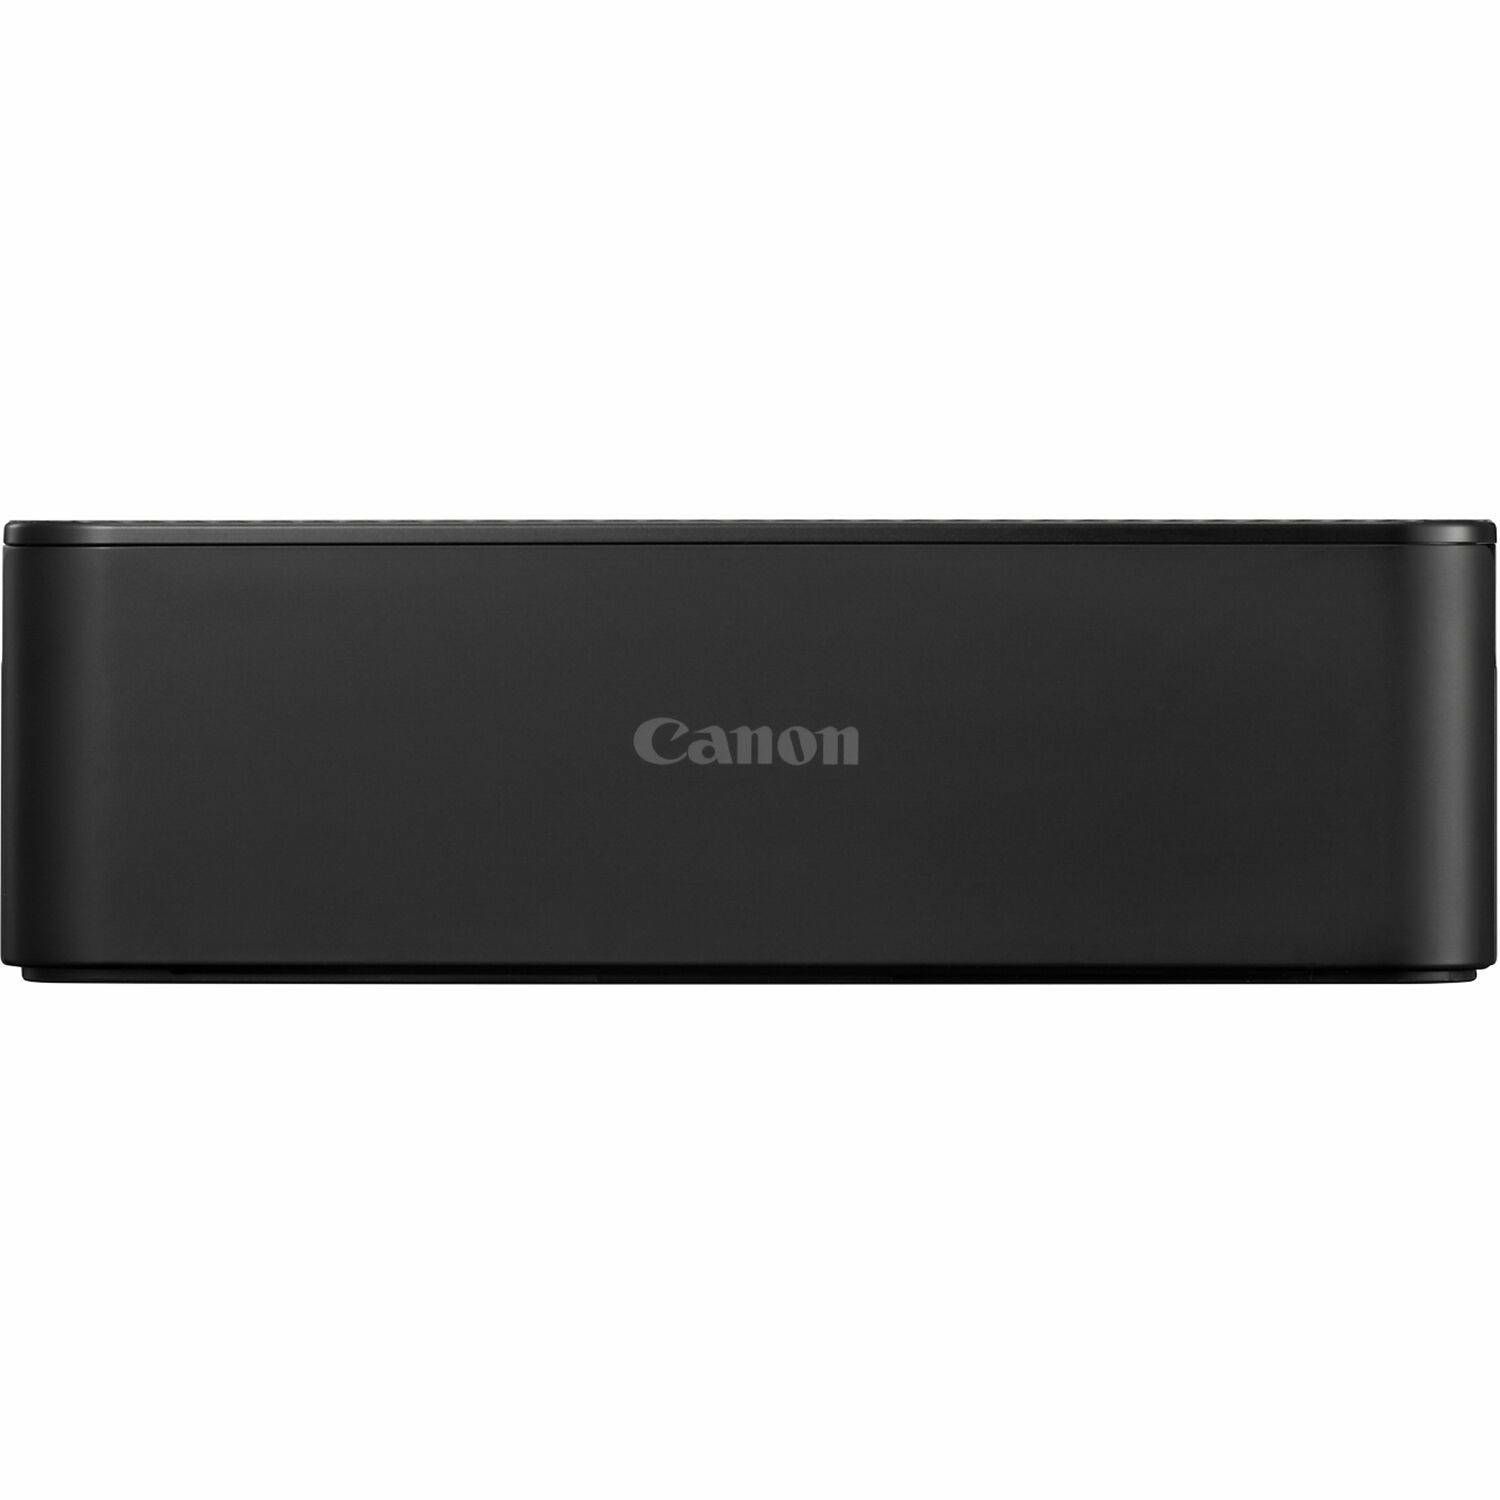 Canon Selphy CP1500 Black crni termosublimacijski instant foto printer